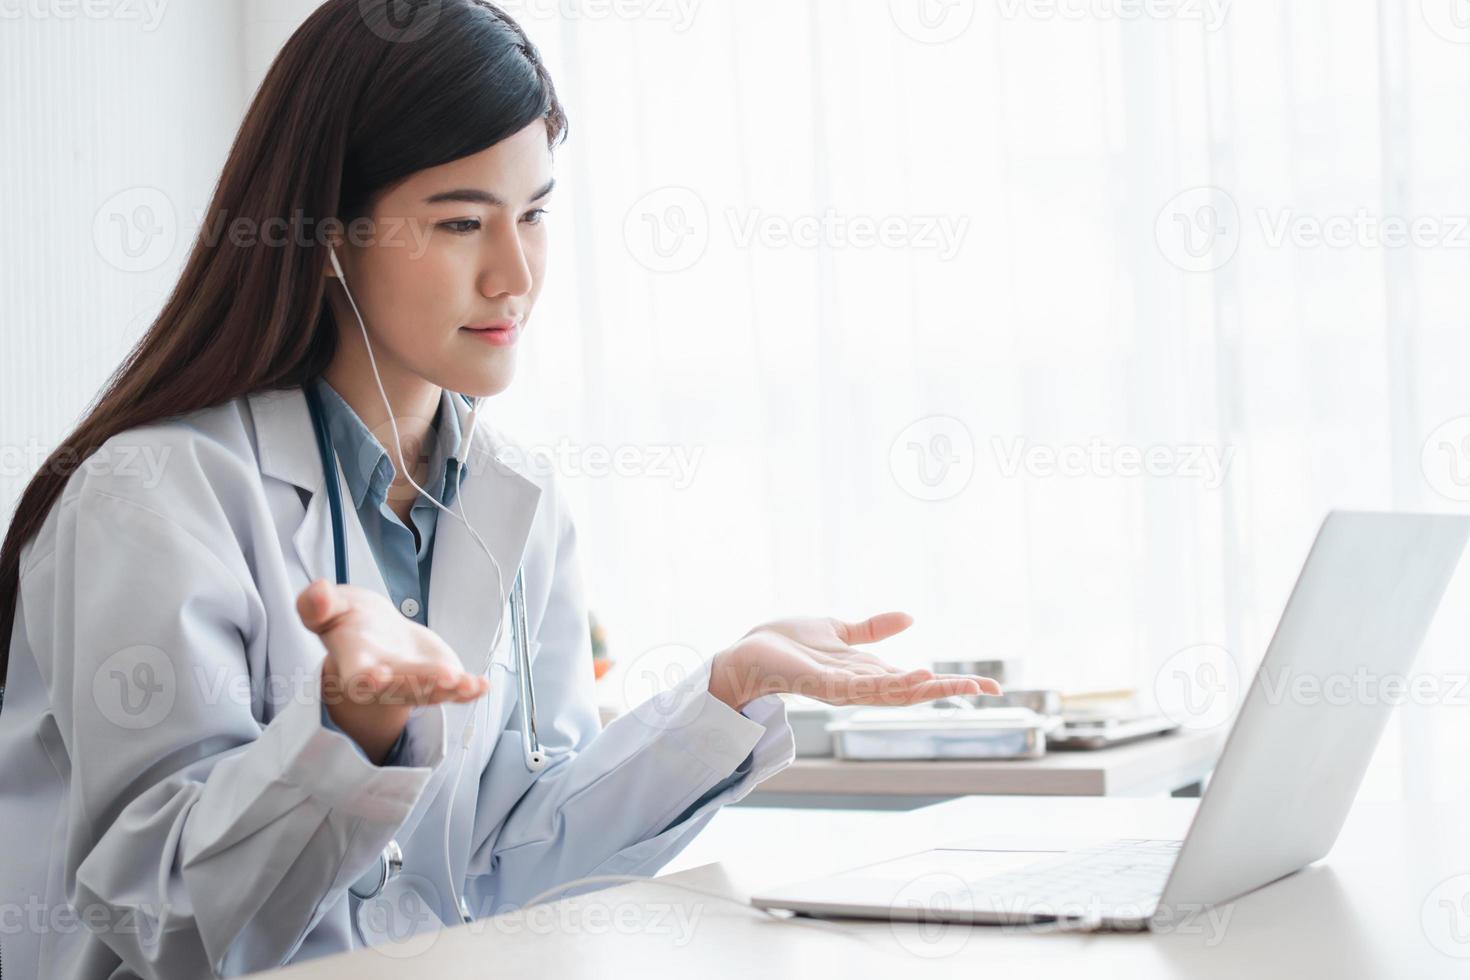 La doctora terapeuta asiática está visitando en línea a un paciente en la aplicación de Internet. ella escucha y da consejos y explica cómo tratar la enfermedad inicial, concepto de tecnología médica. foto